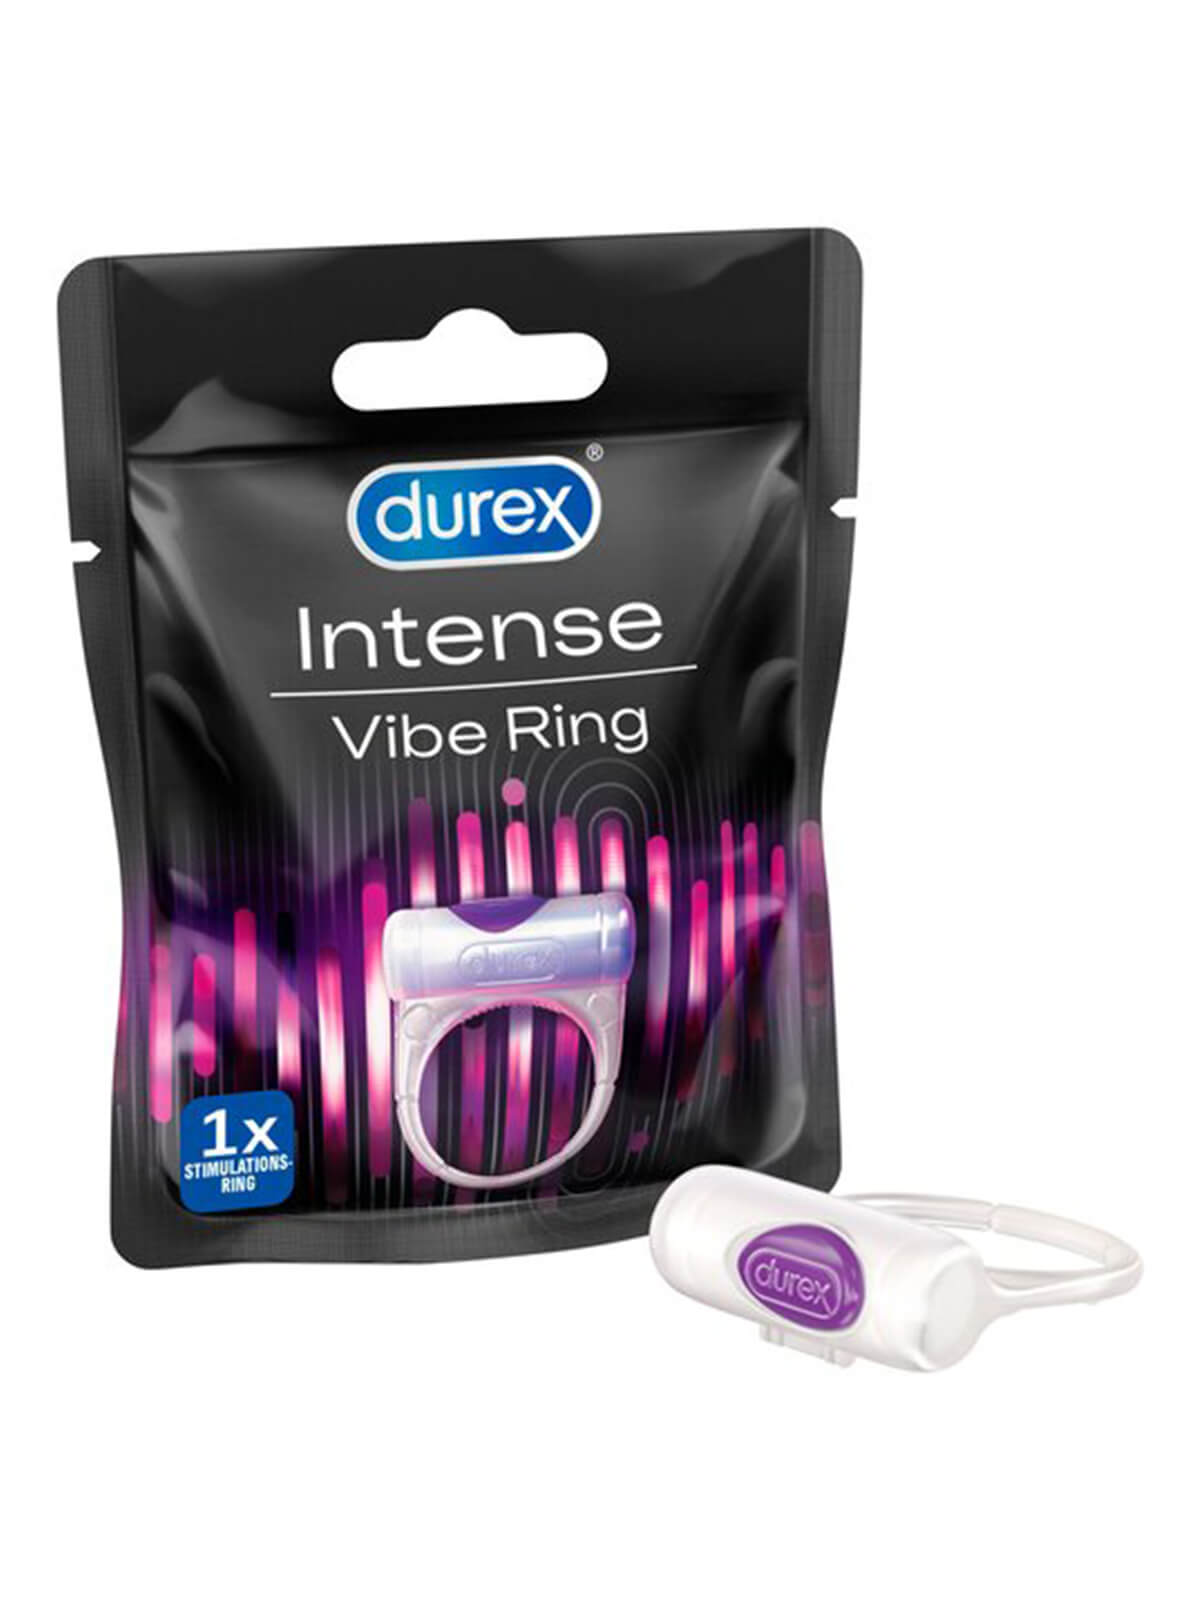 Durex Intense Vibe Ring – Medoget